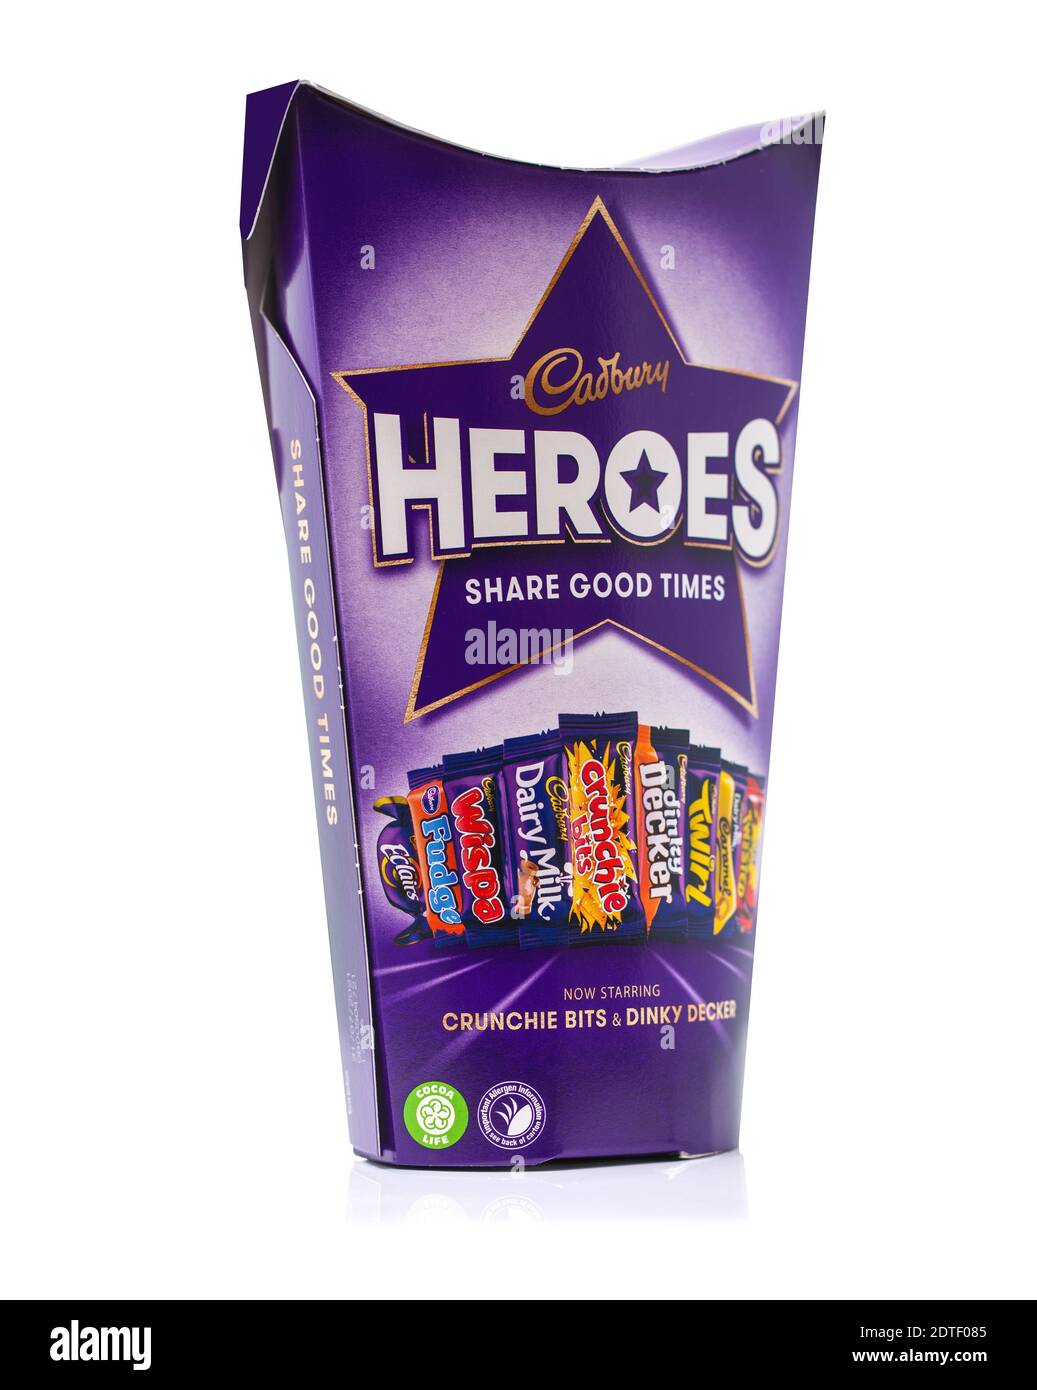 SWINDON, Royaume-Uni - 21 DÉCEMBRE 2020 : boîte de chocolats de Noël Cadburys Heroes sur fond blanc. Banque D'Images